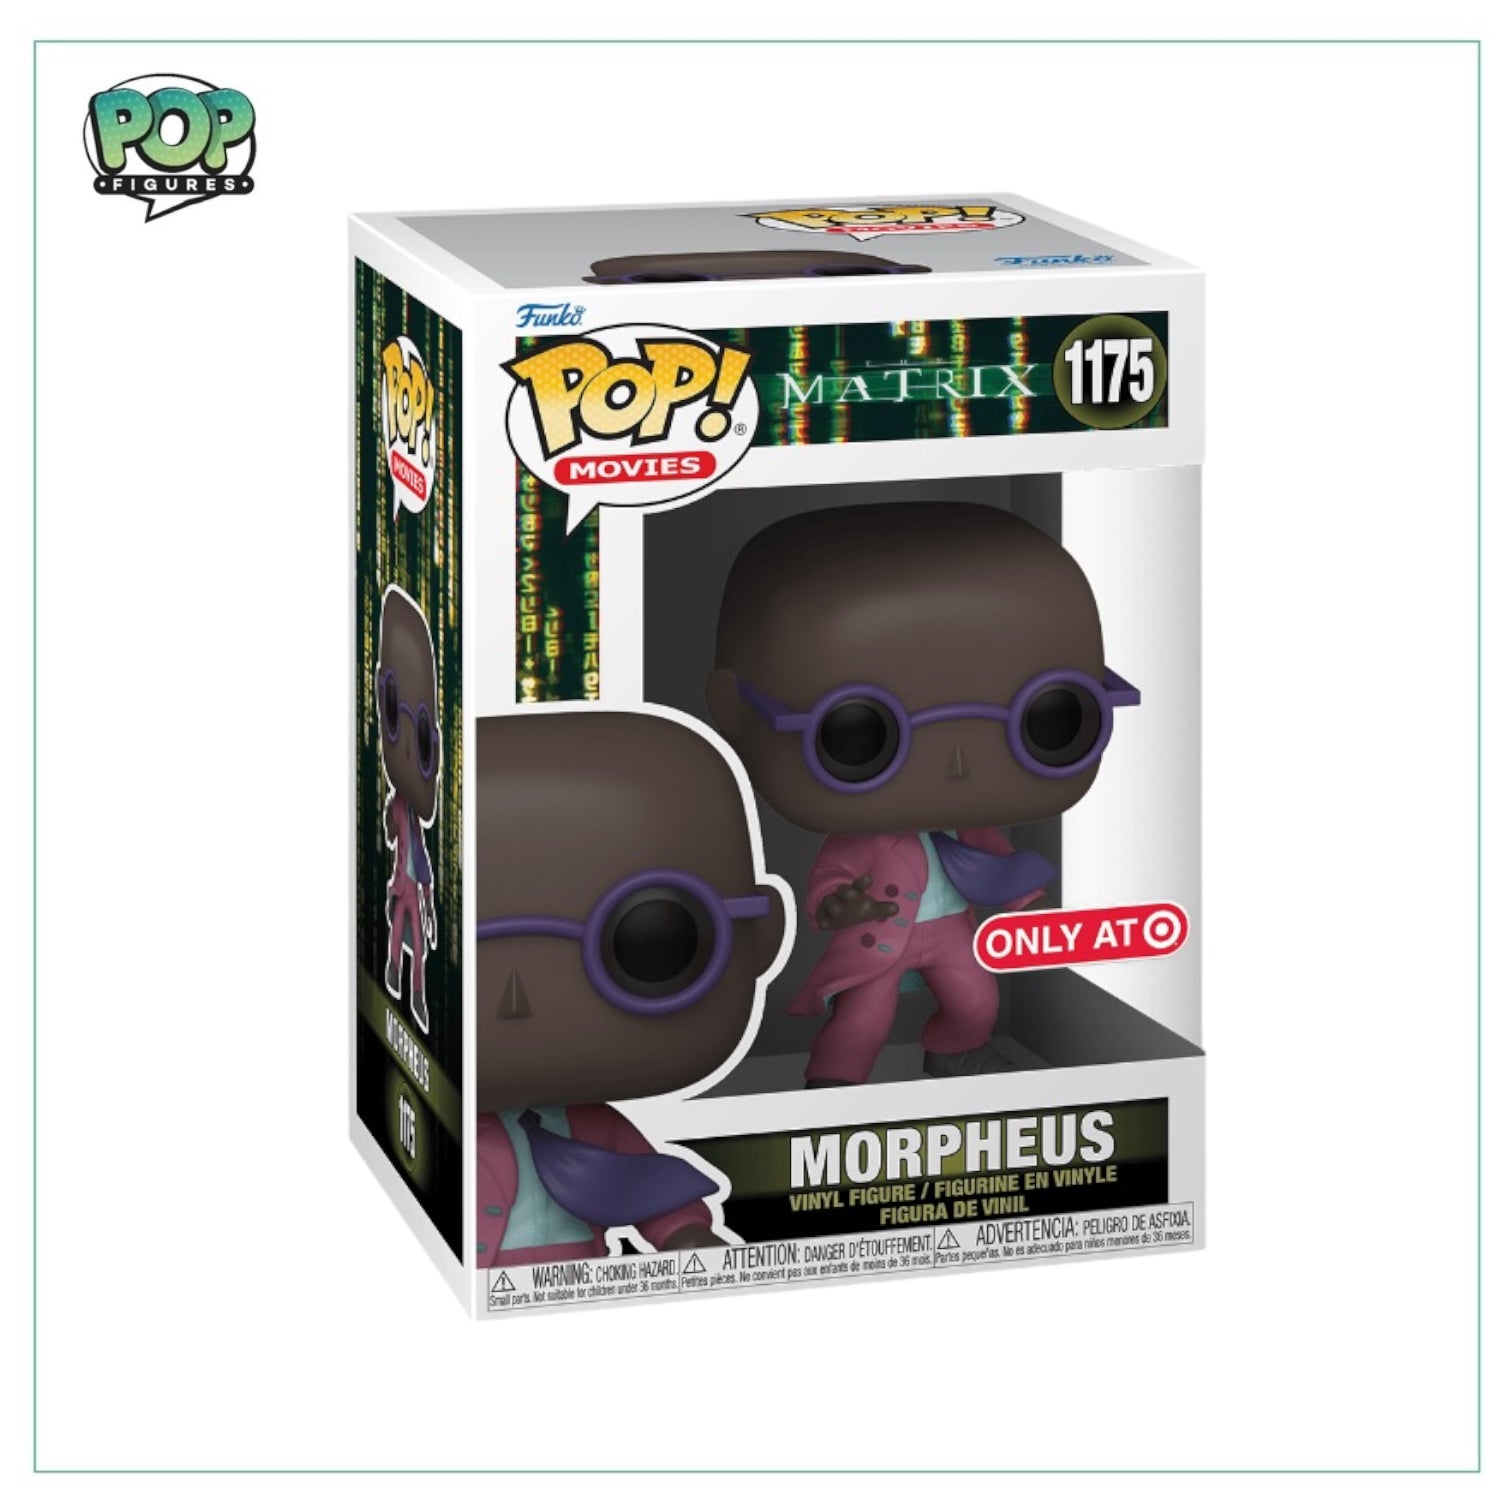 Morpheus (Purple Suit) #1175 Funko Pop! - The Matrix - 2021 Pop!